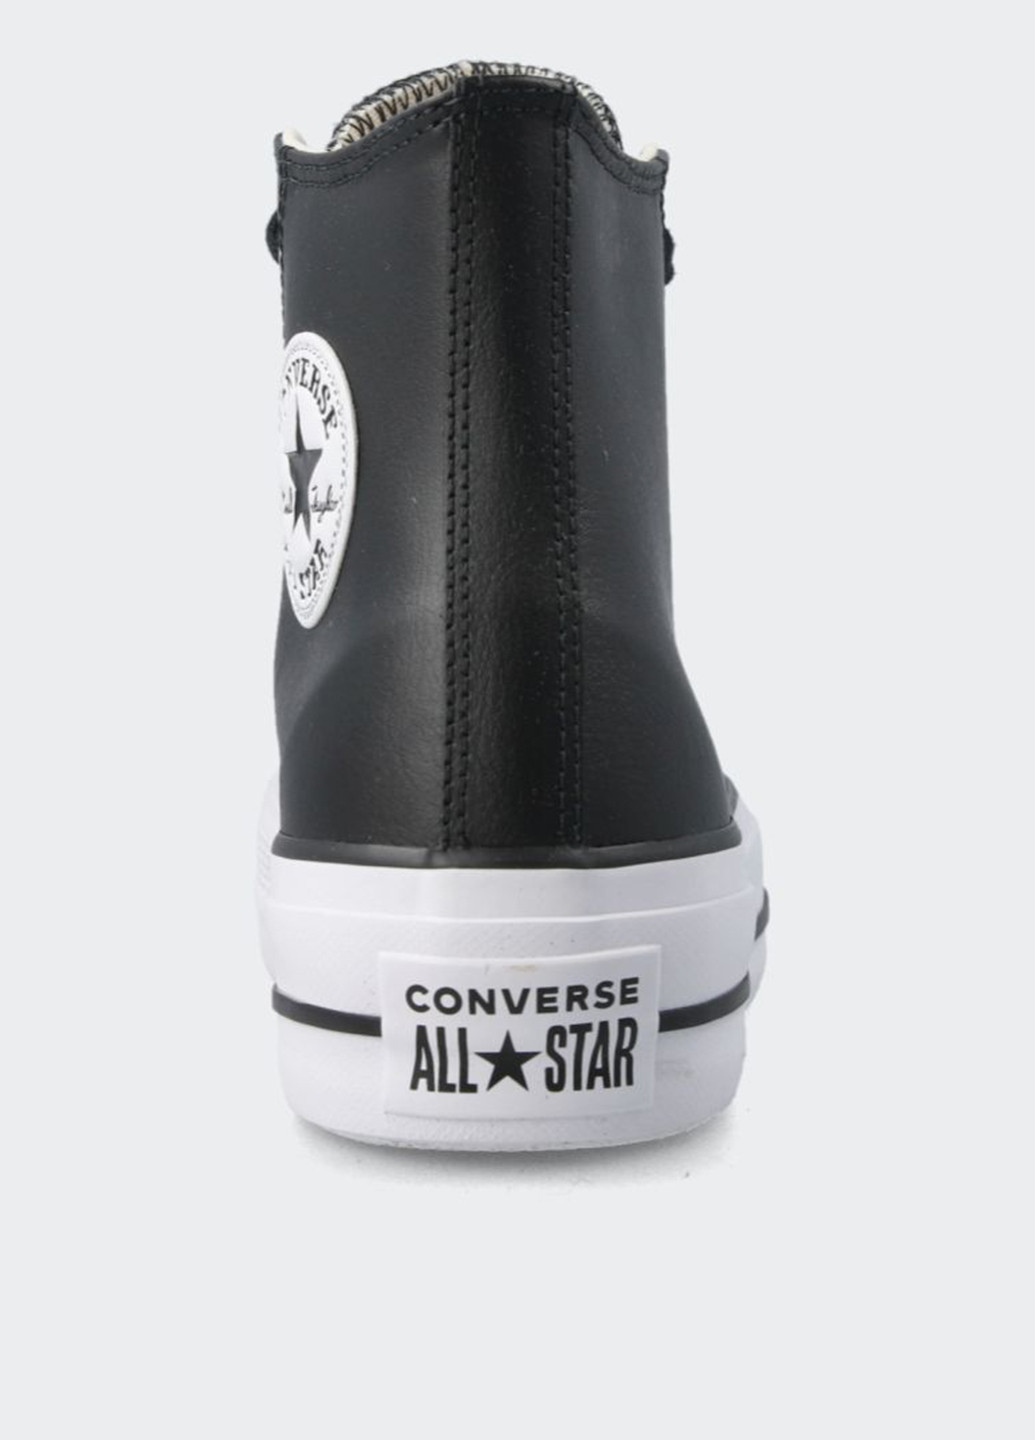 Черные кеды Converse